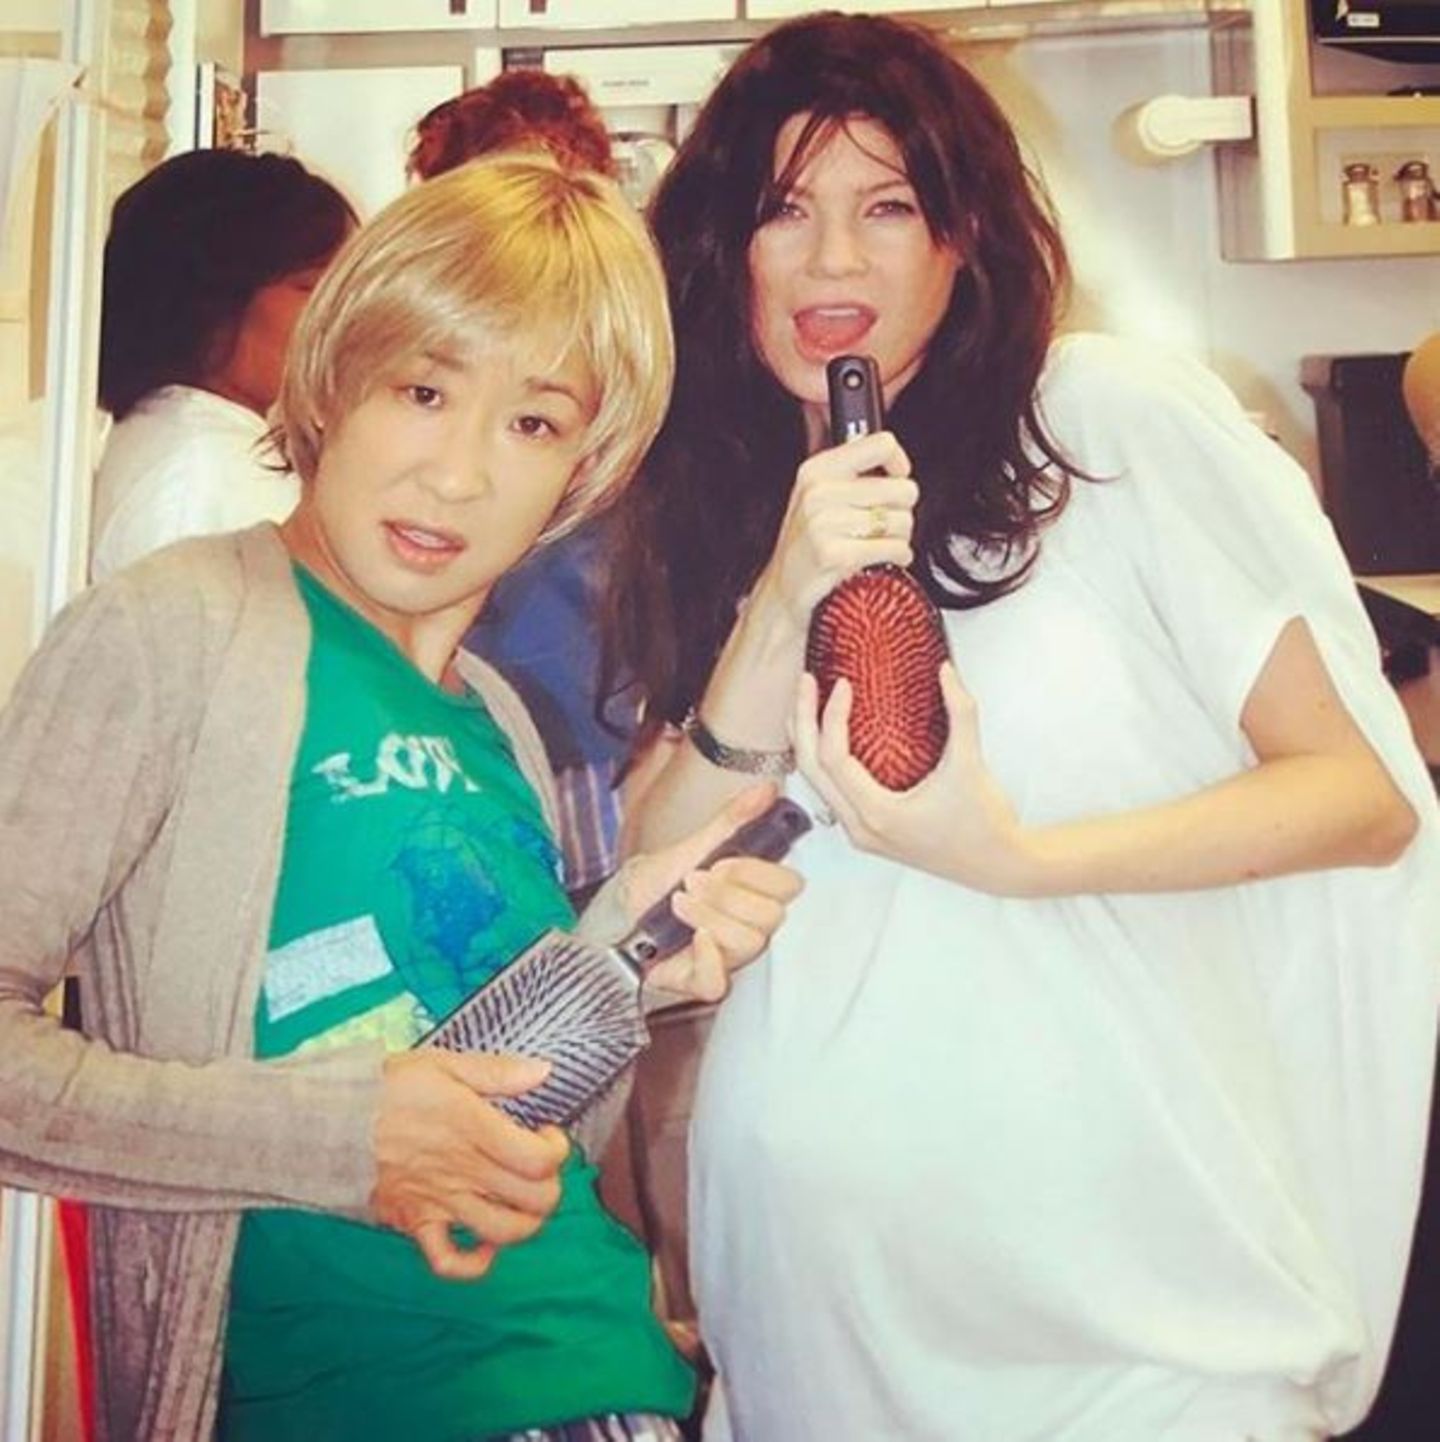 28. September 2017  Ellen Pompeo postet auf Instagram dieses lustige Throwback, das sie und Sandra Oh am Set von "Grey's Anatomy" zeigt. Darauf stellen sie ihre Girlband-Qualitäten super lustig unter Beweis.